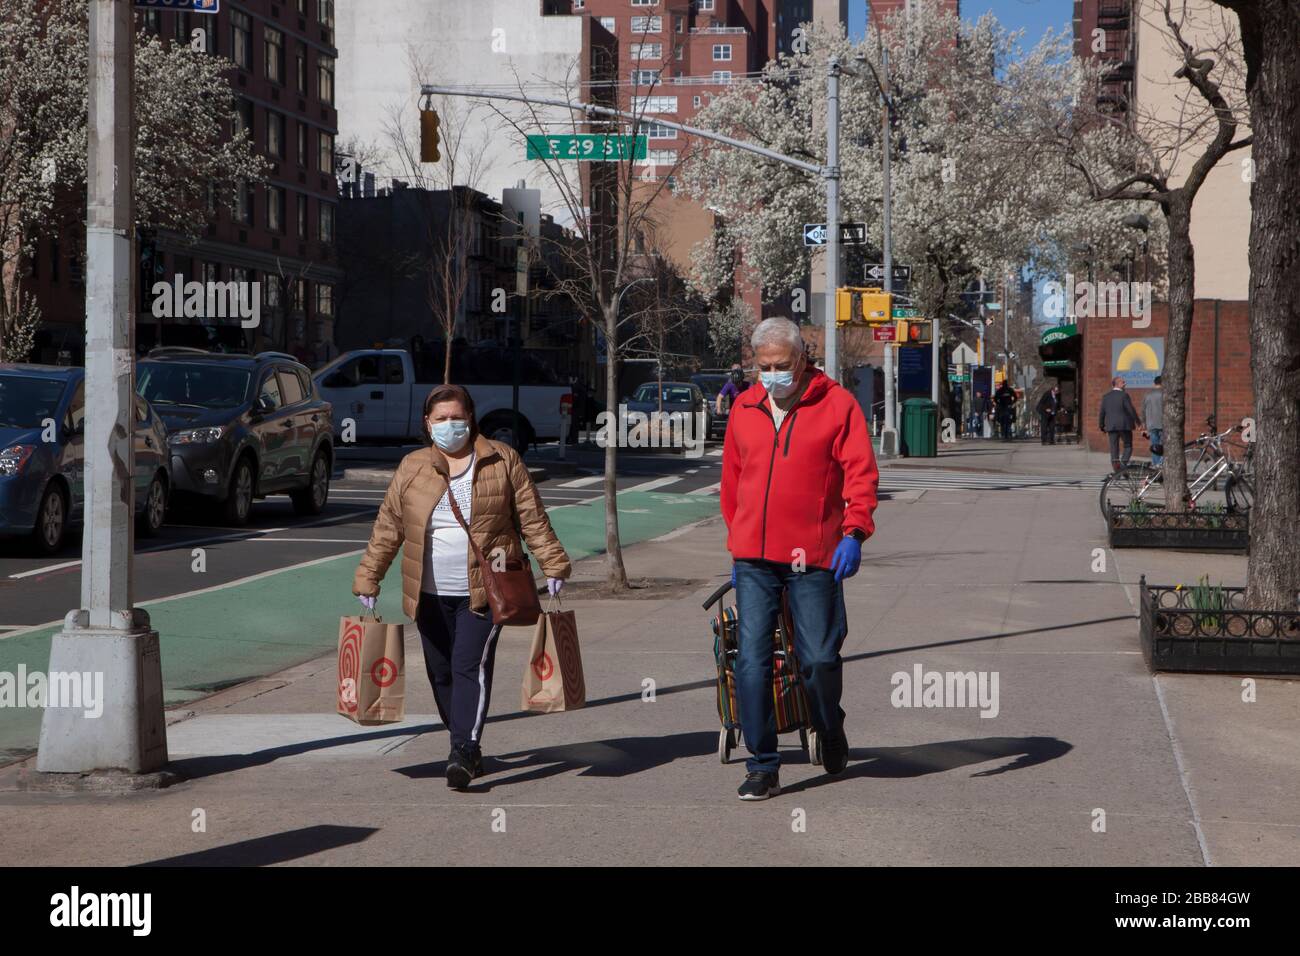 Menschen, die Gesichtsmasken tragen, während sie während der Covid-19-Epidemie (Coronavirus) auf den Bürgersteigen von New York City spazieren. Stockfoto